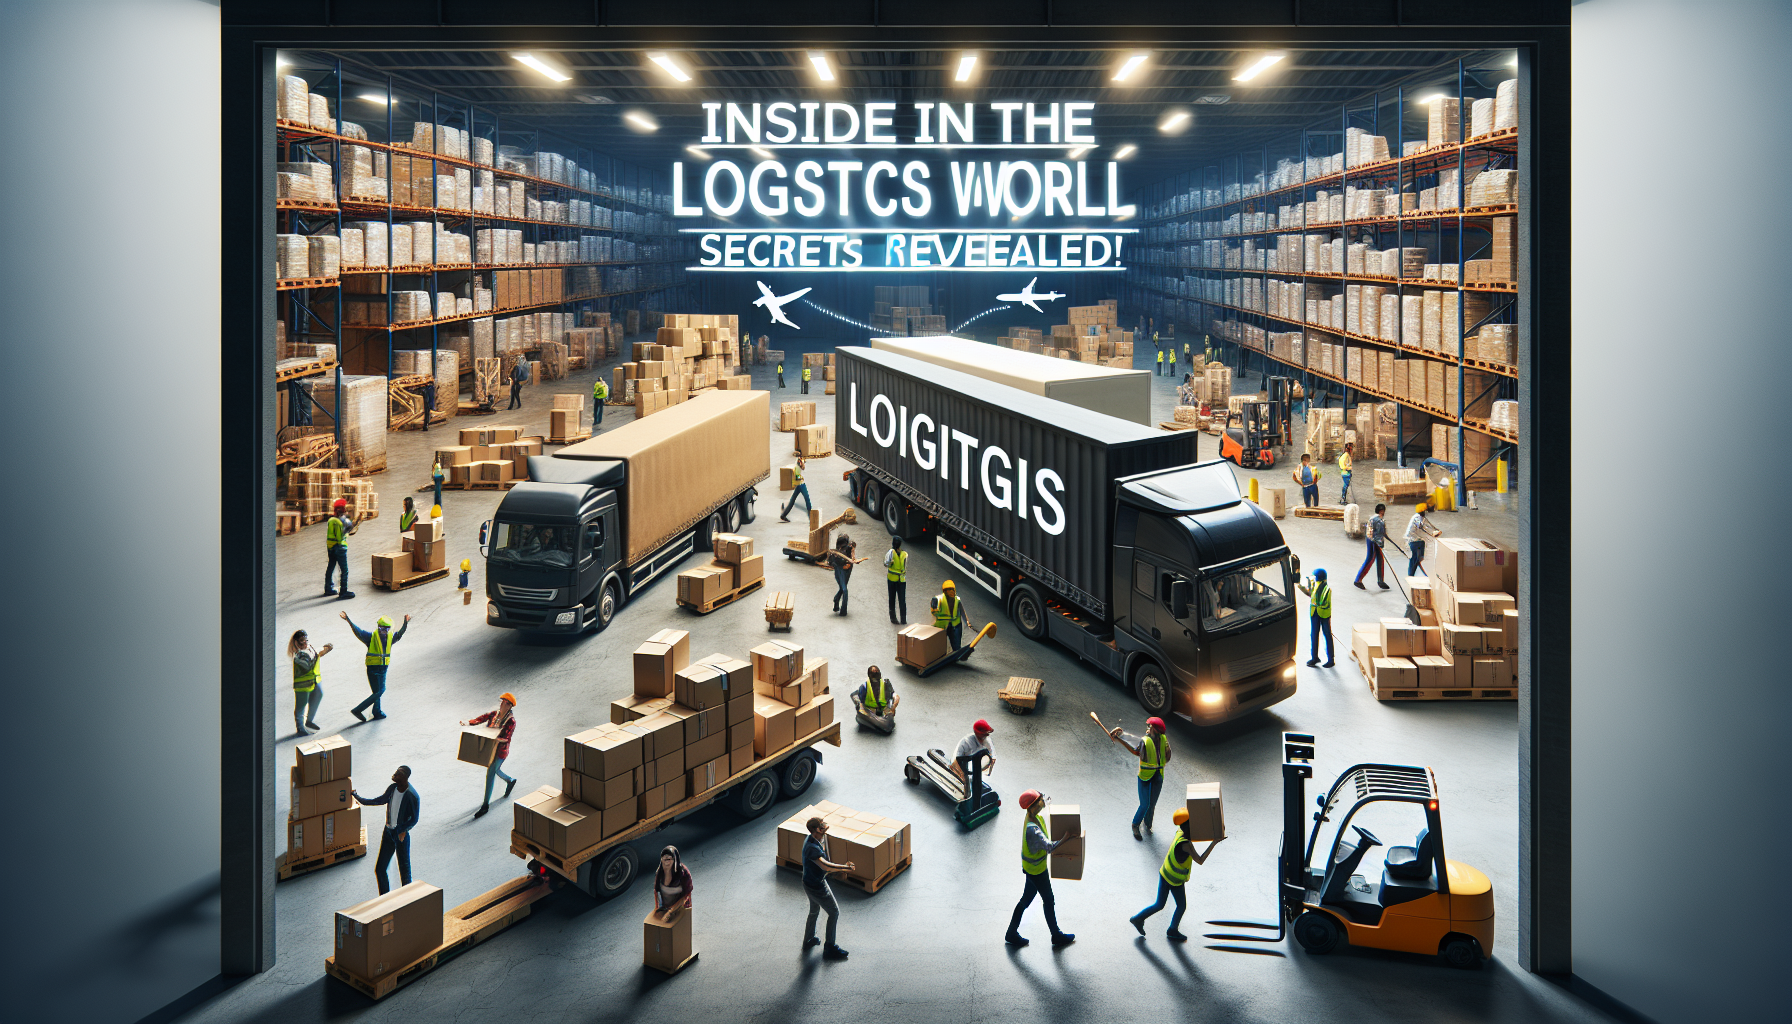 découvrez ce qu'est une entreprise de logistique et comment elle gère le transport, le stockage et la distribution des marchandises, à travers une explication claire et concise.